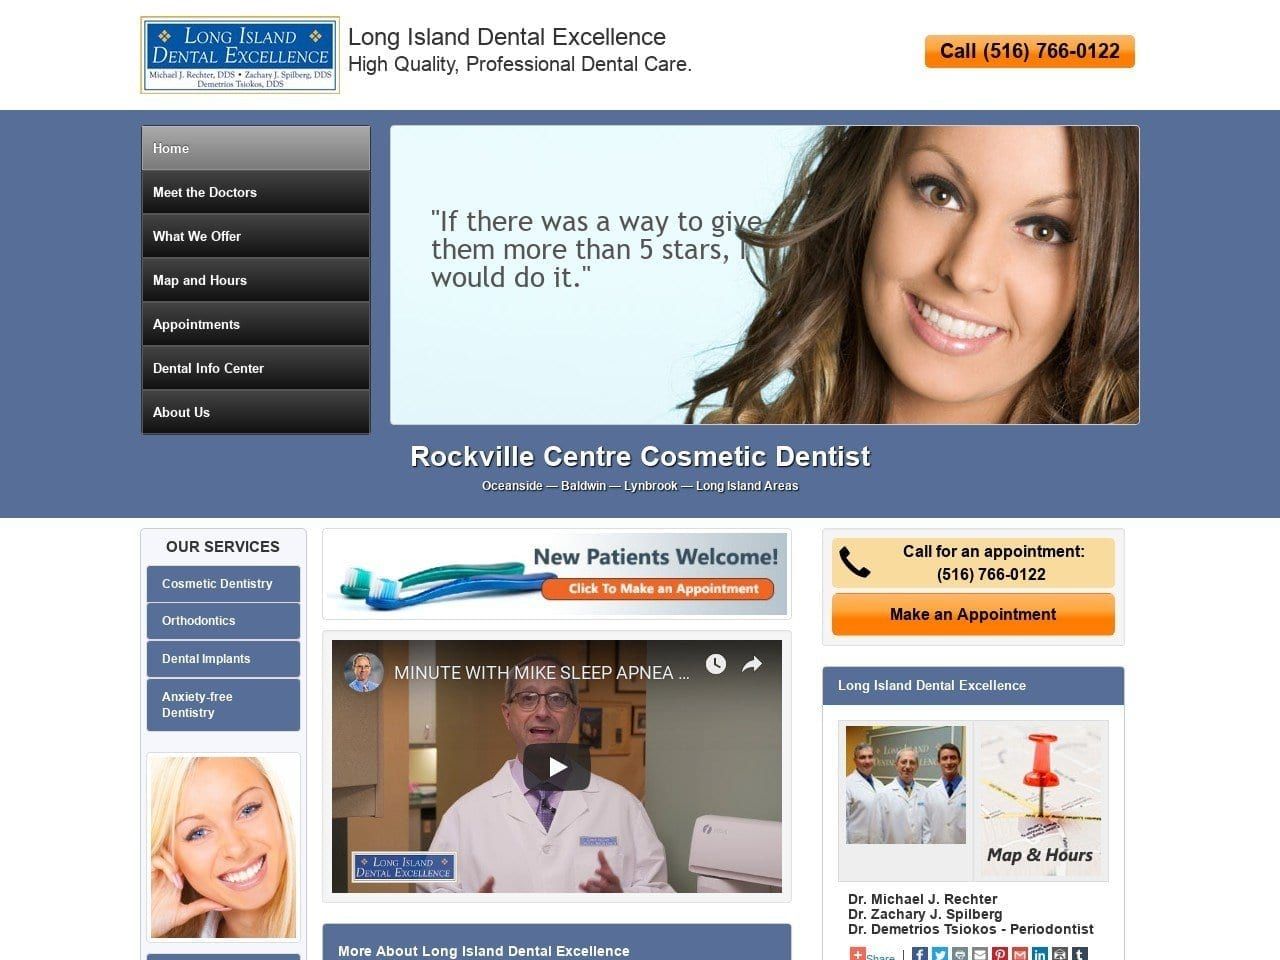 Dr. Michael J. Rechter DDS Website Screenshot from longislanddentalexcellence.com